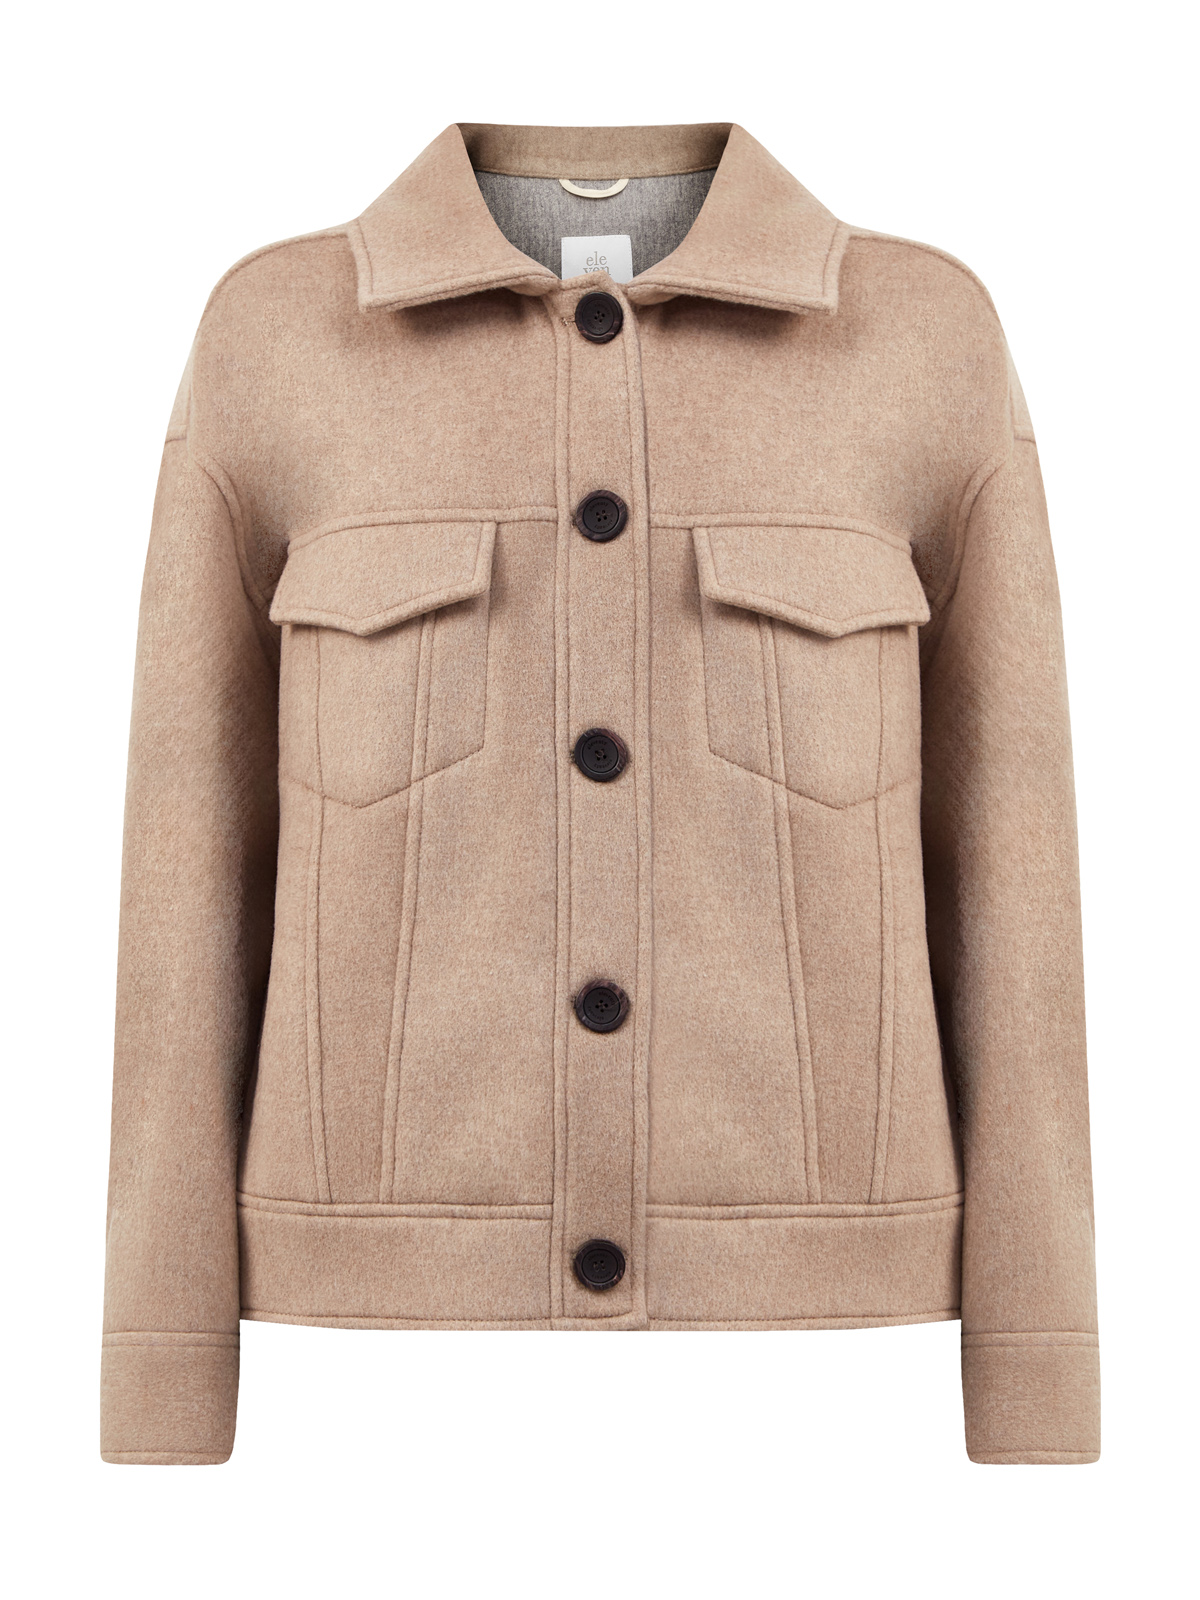 Куртка из плотной шерсти и кашемира с застежкой на пуговицы ELEVENTY, цвет бежевый, размер 40;42;44